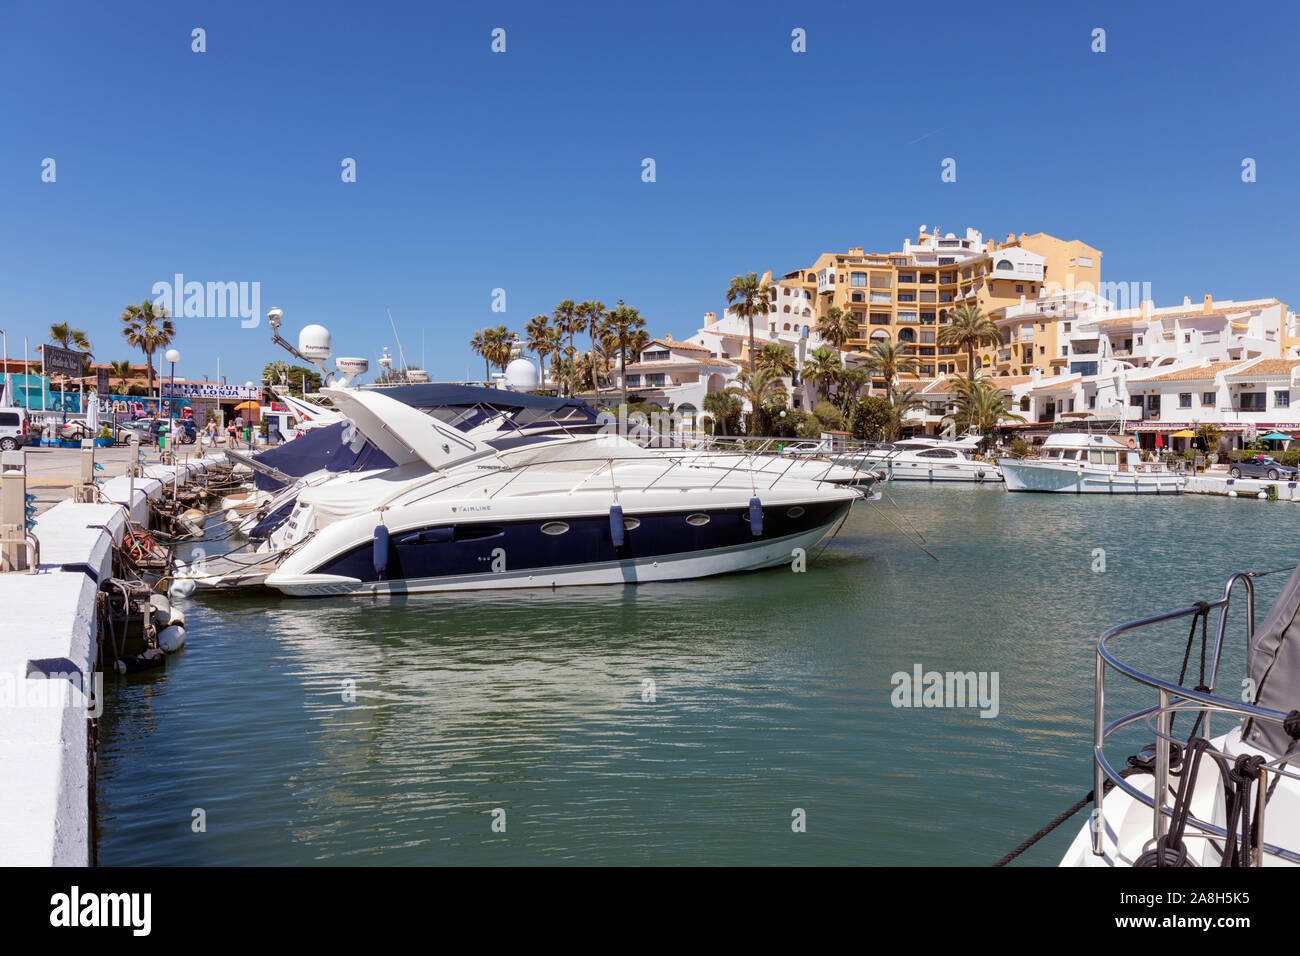 Boats in Puerto Cabopino, near Marbella, Malaga Province, Costa del Sol, Spain. Stock Photo